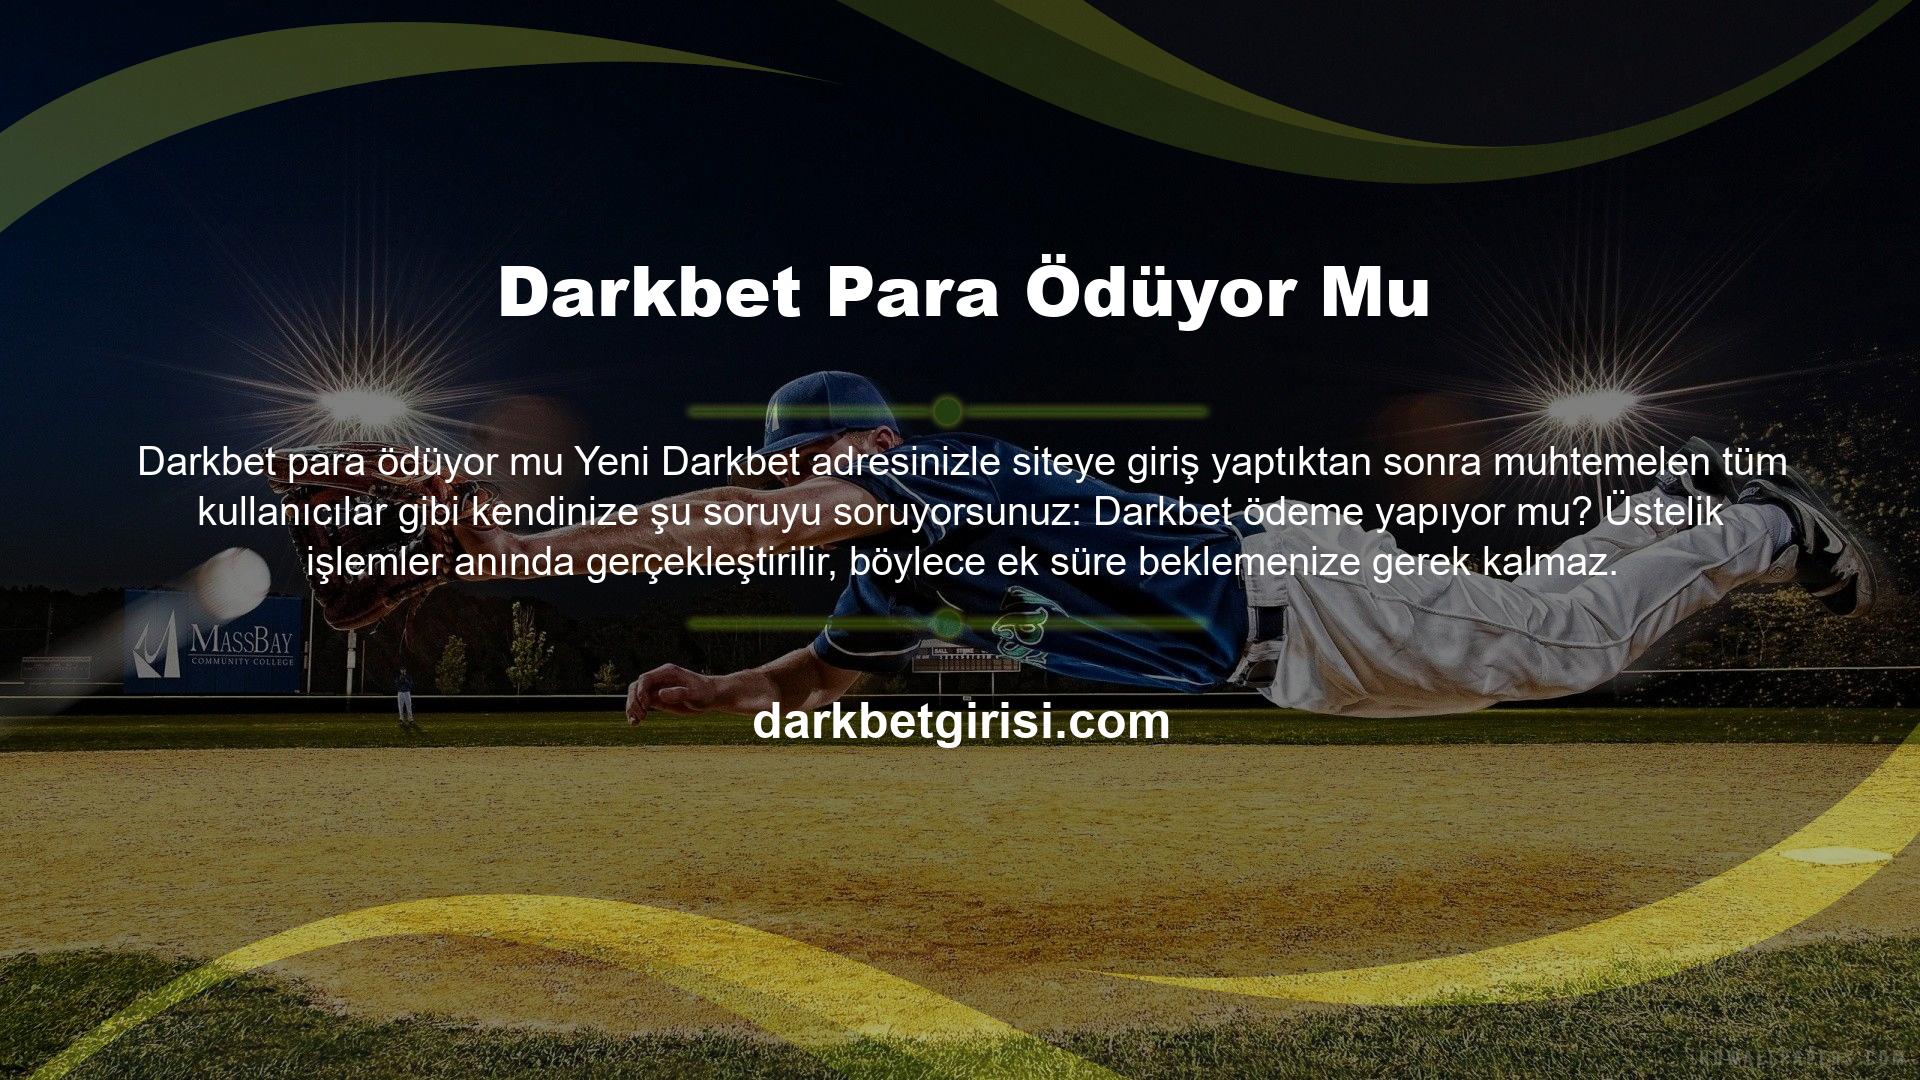 Kullanıcılara para yatırma ve çekme kolaylığı sunan Darkbet adlı kaliteli bir site olarak insanların ilgisini çekmiştir